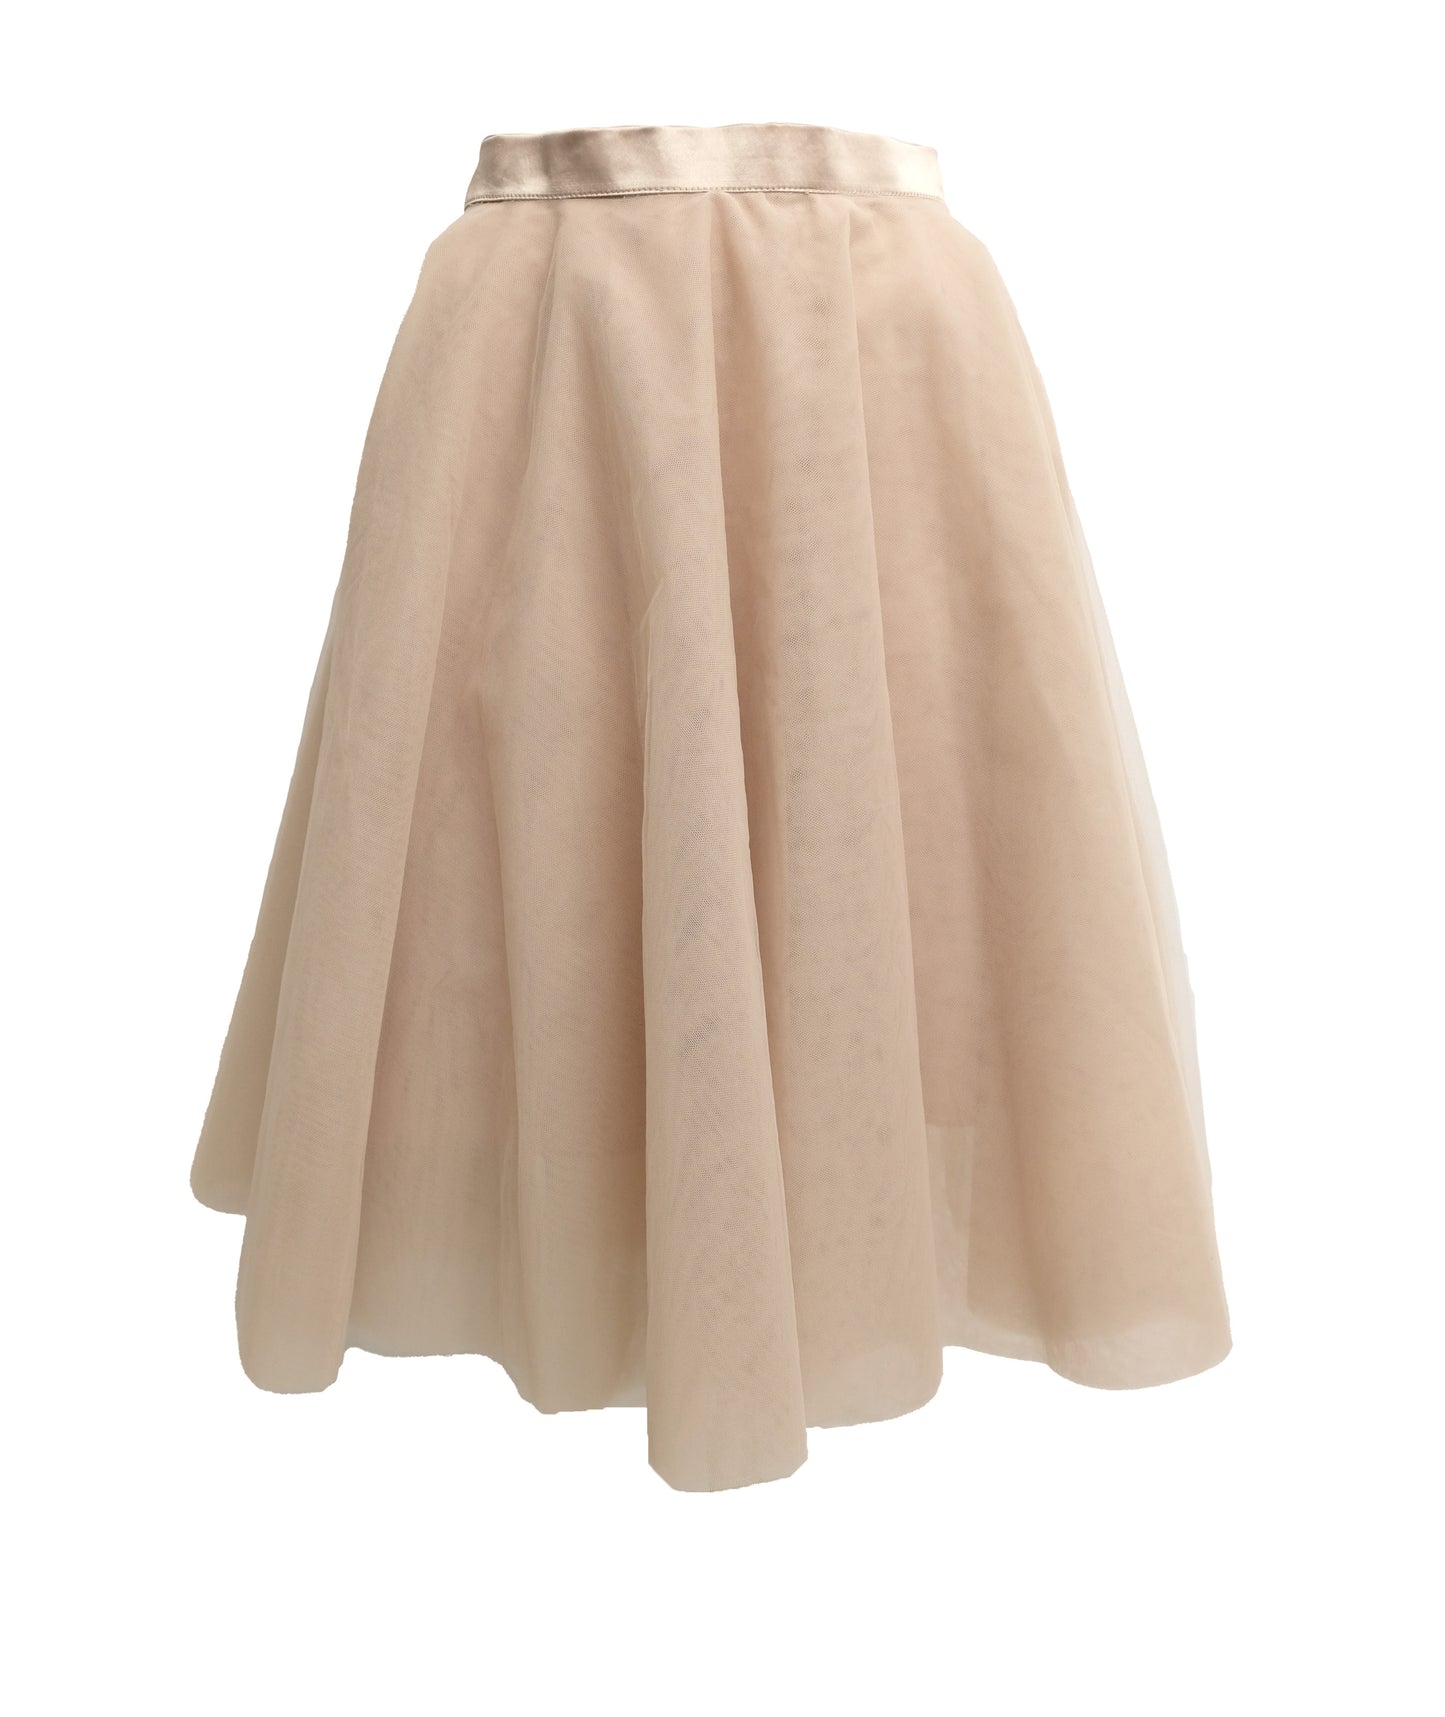 Ballerina Skirt in Pale Beige Tulle, UK8-10